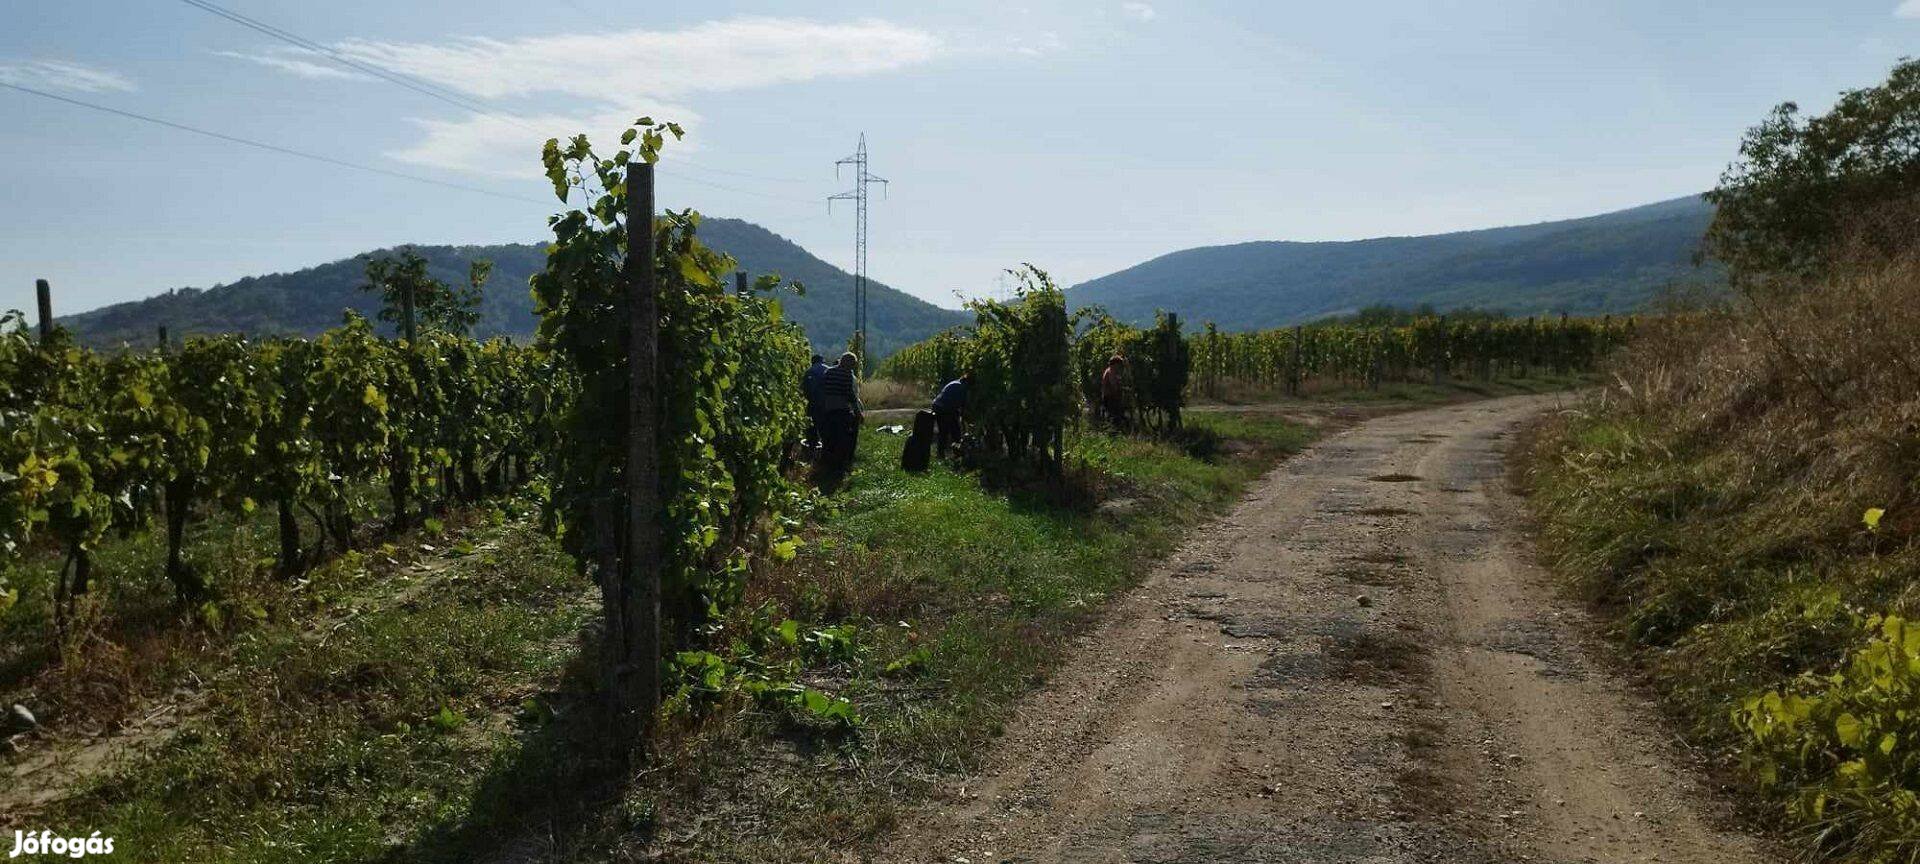 Eladó szőlőterület Olaszliszka határában a Györgyike-dűlőben